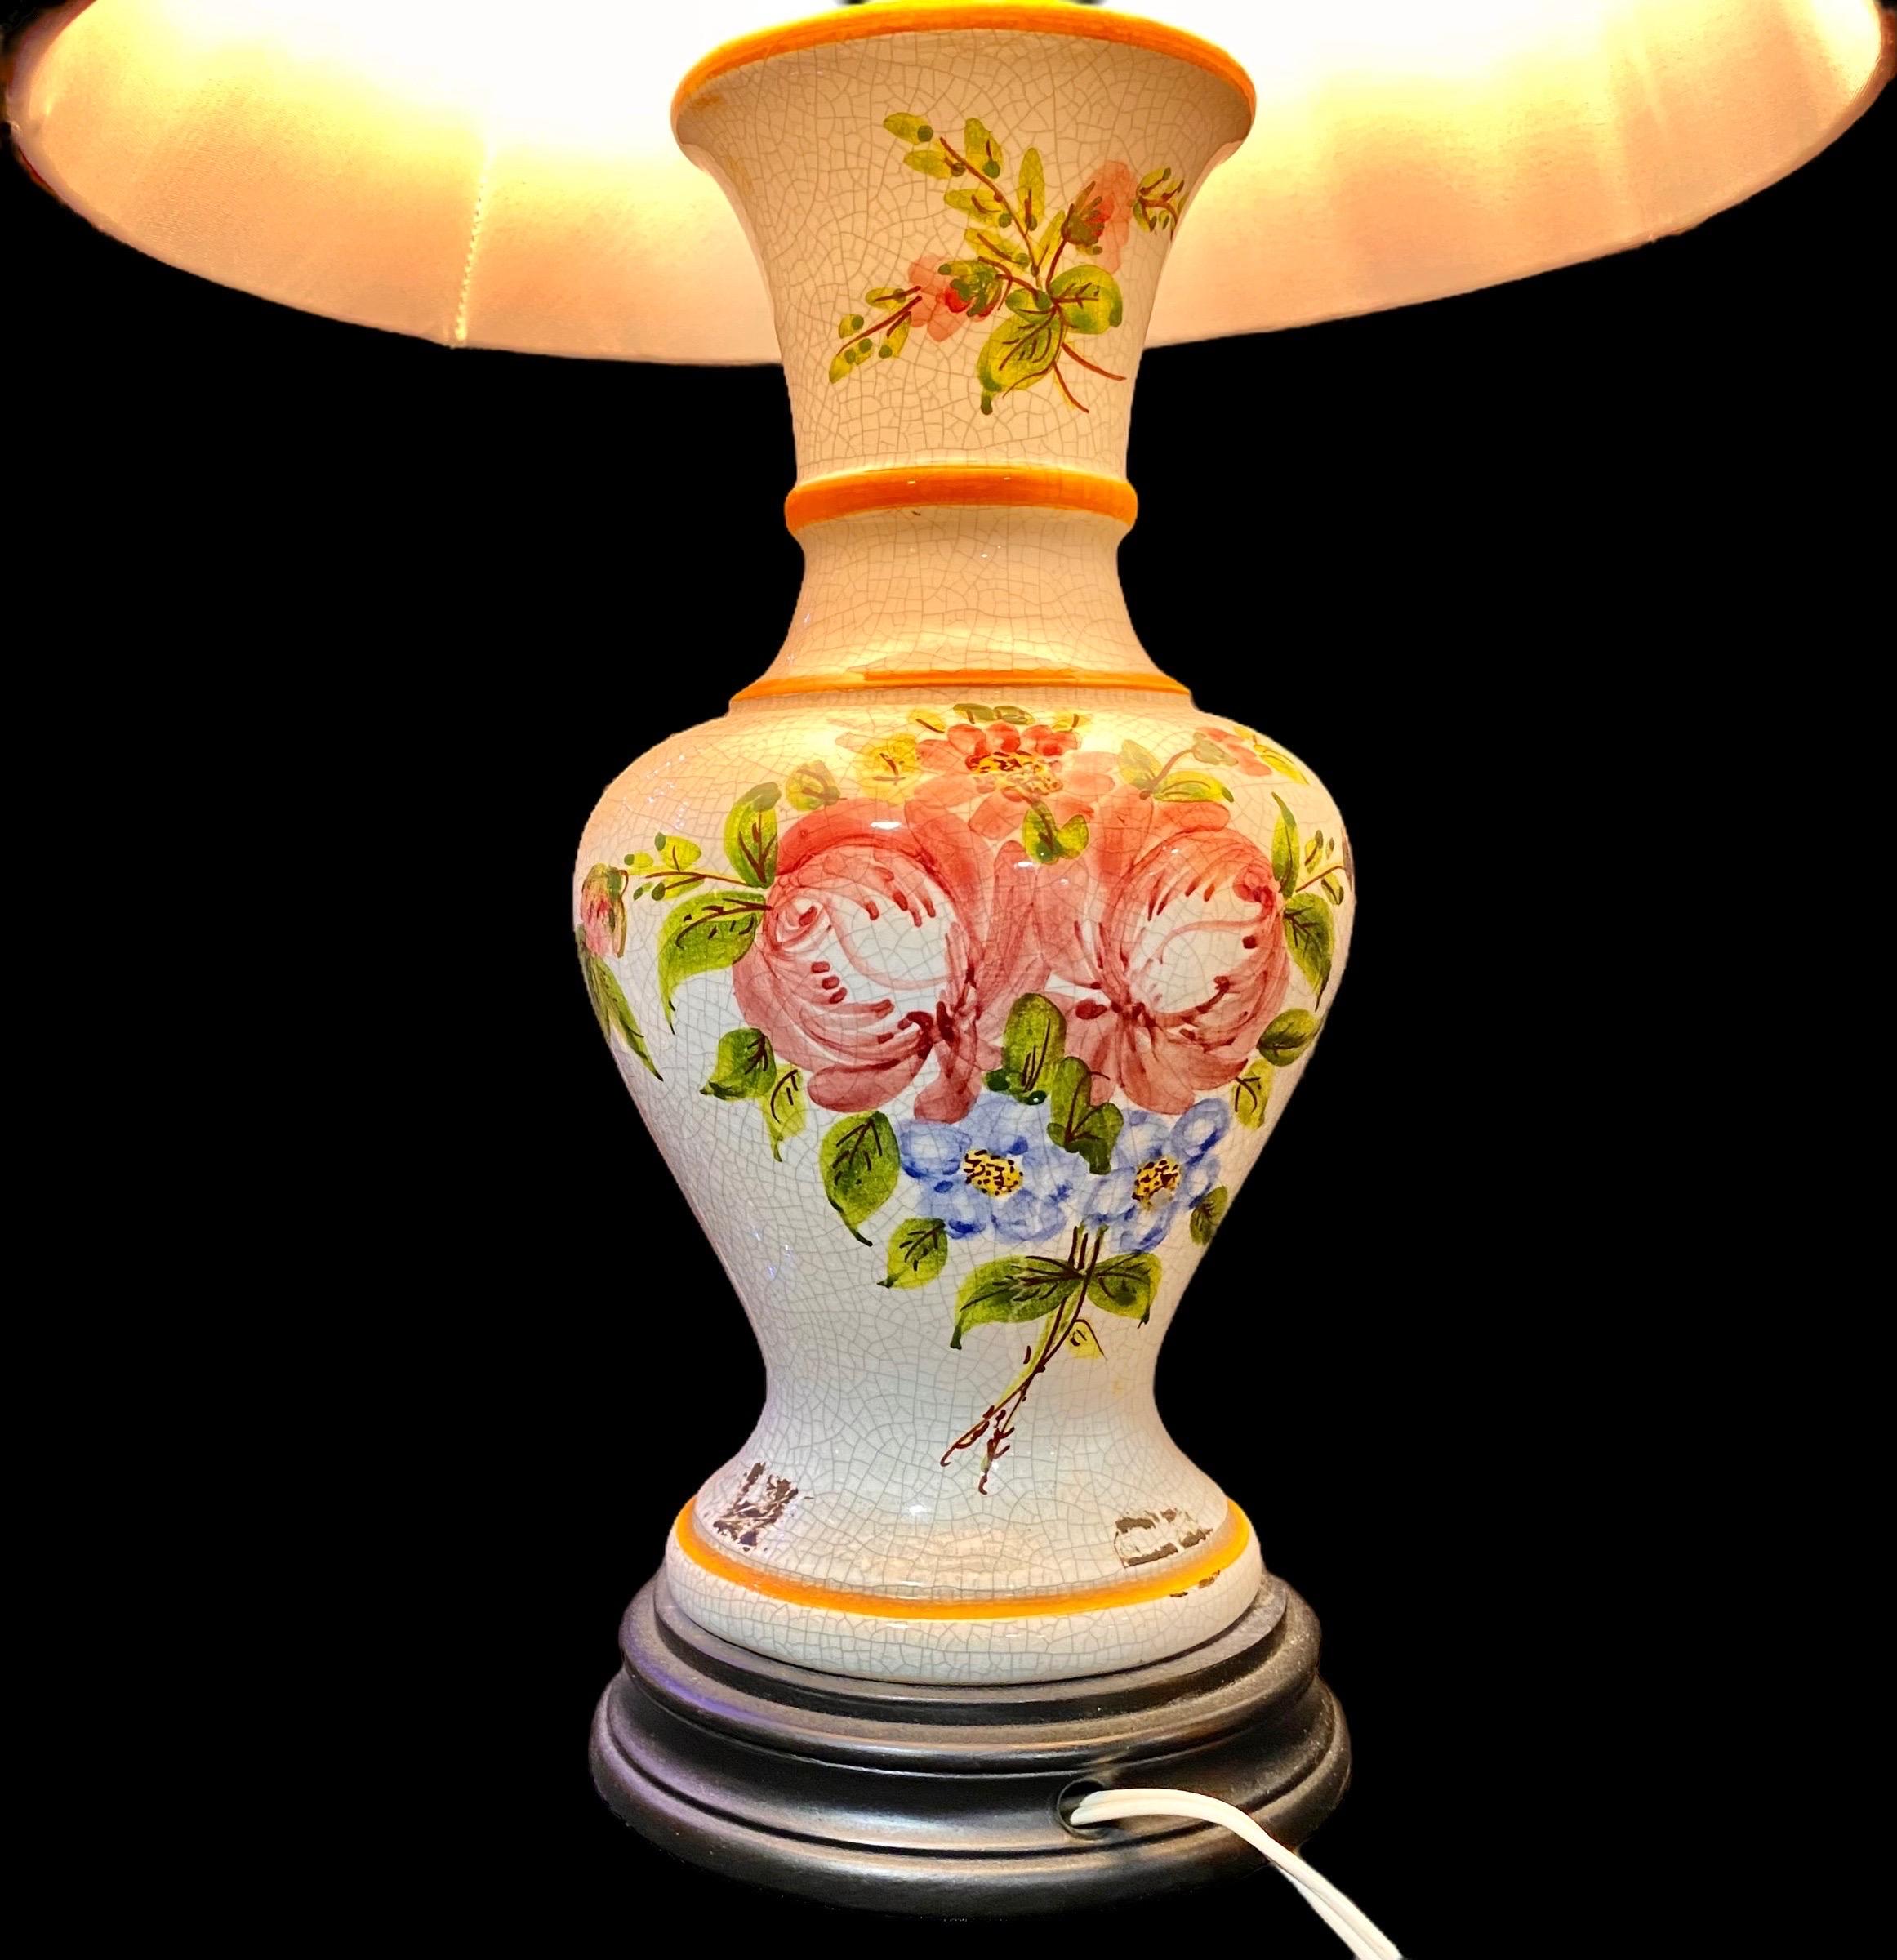 Lampe de table vintage en faïence tournée avec un joli motif floral provincial peint à la main, une base en bois et un abat-jour en soie rouge. 